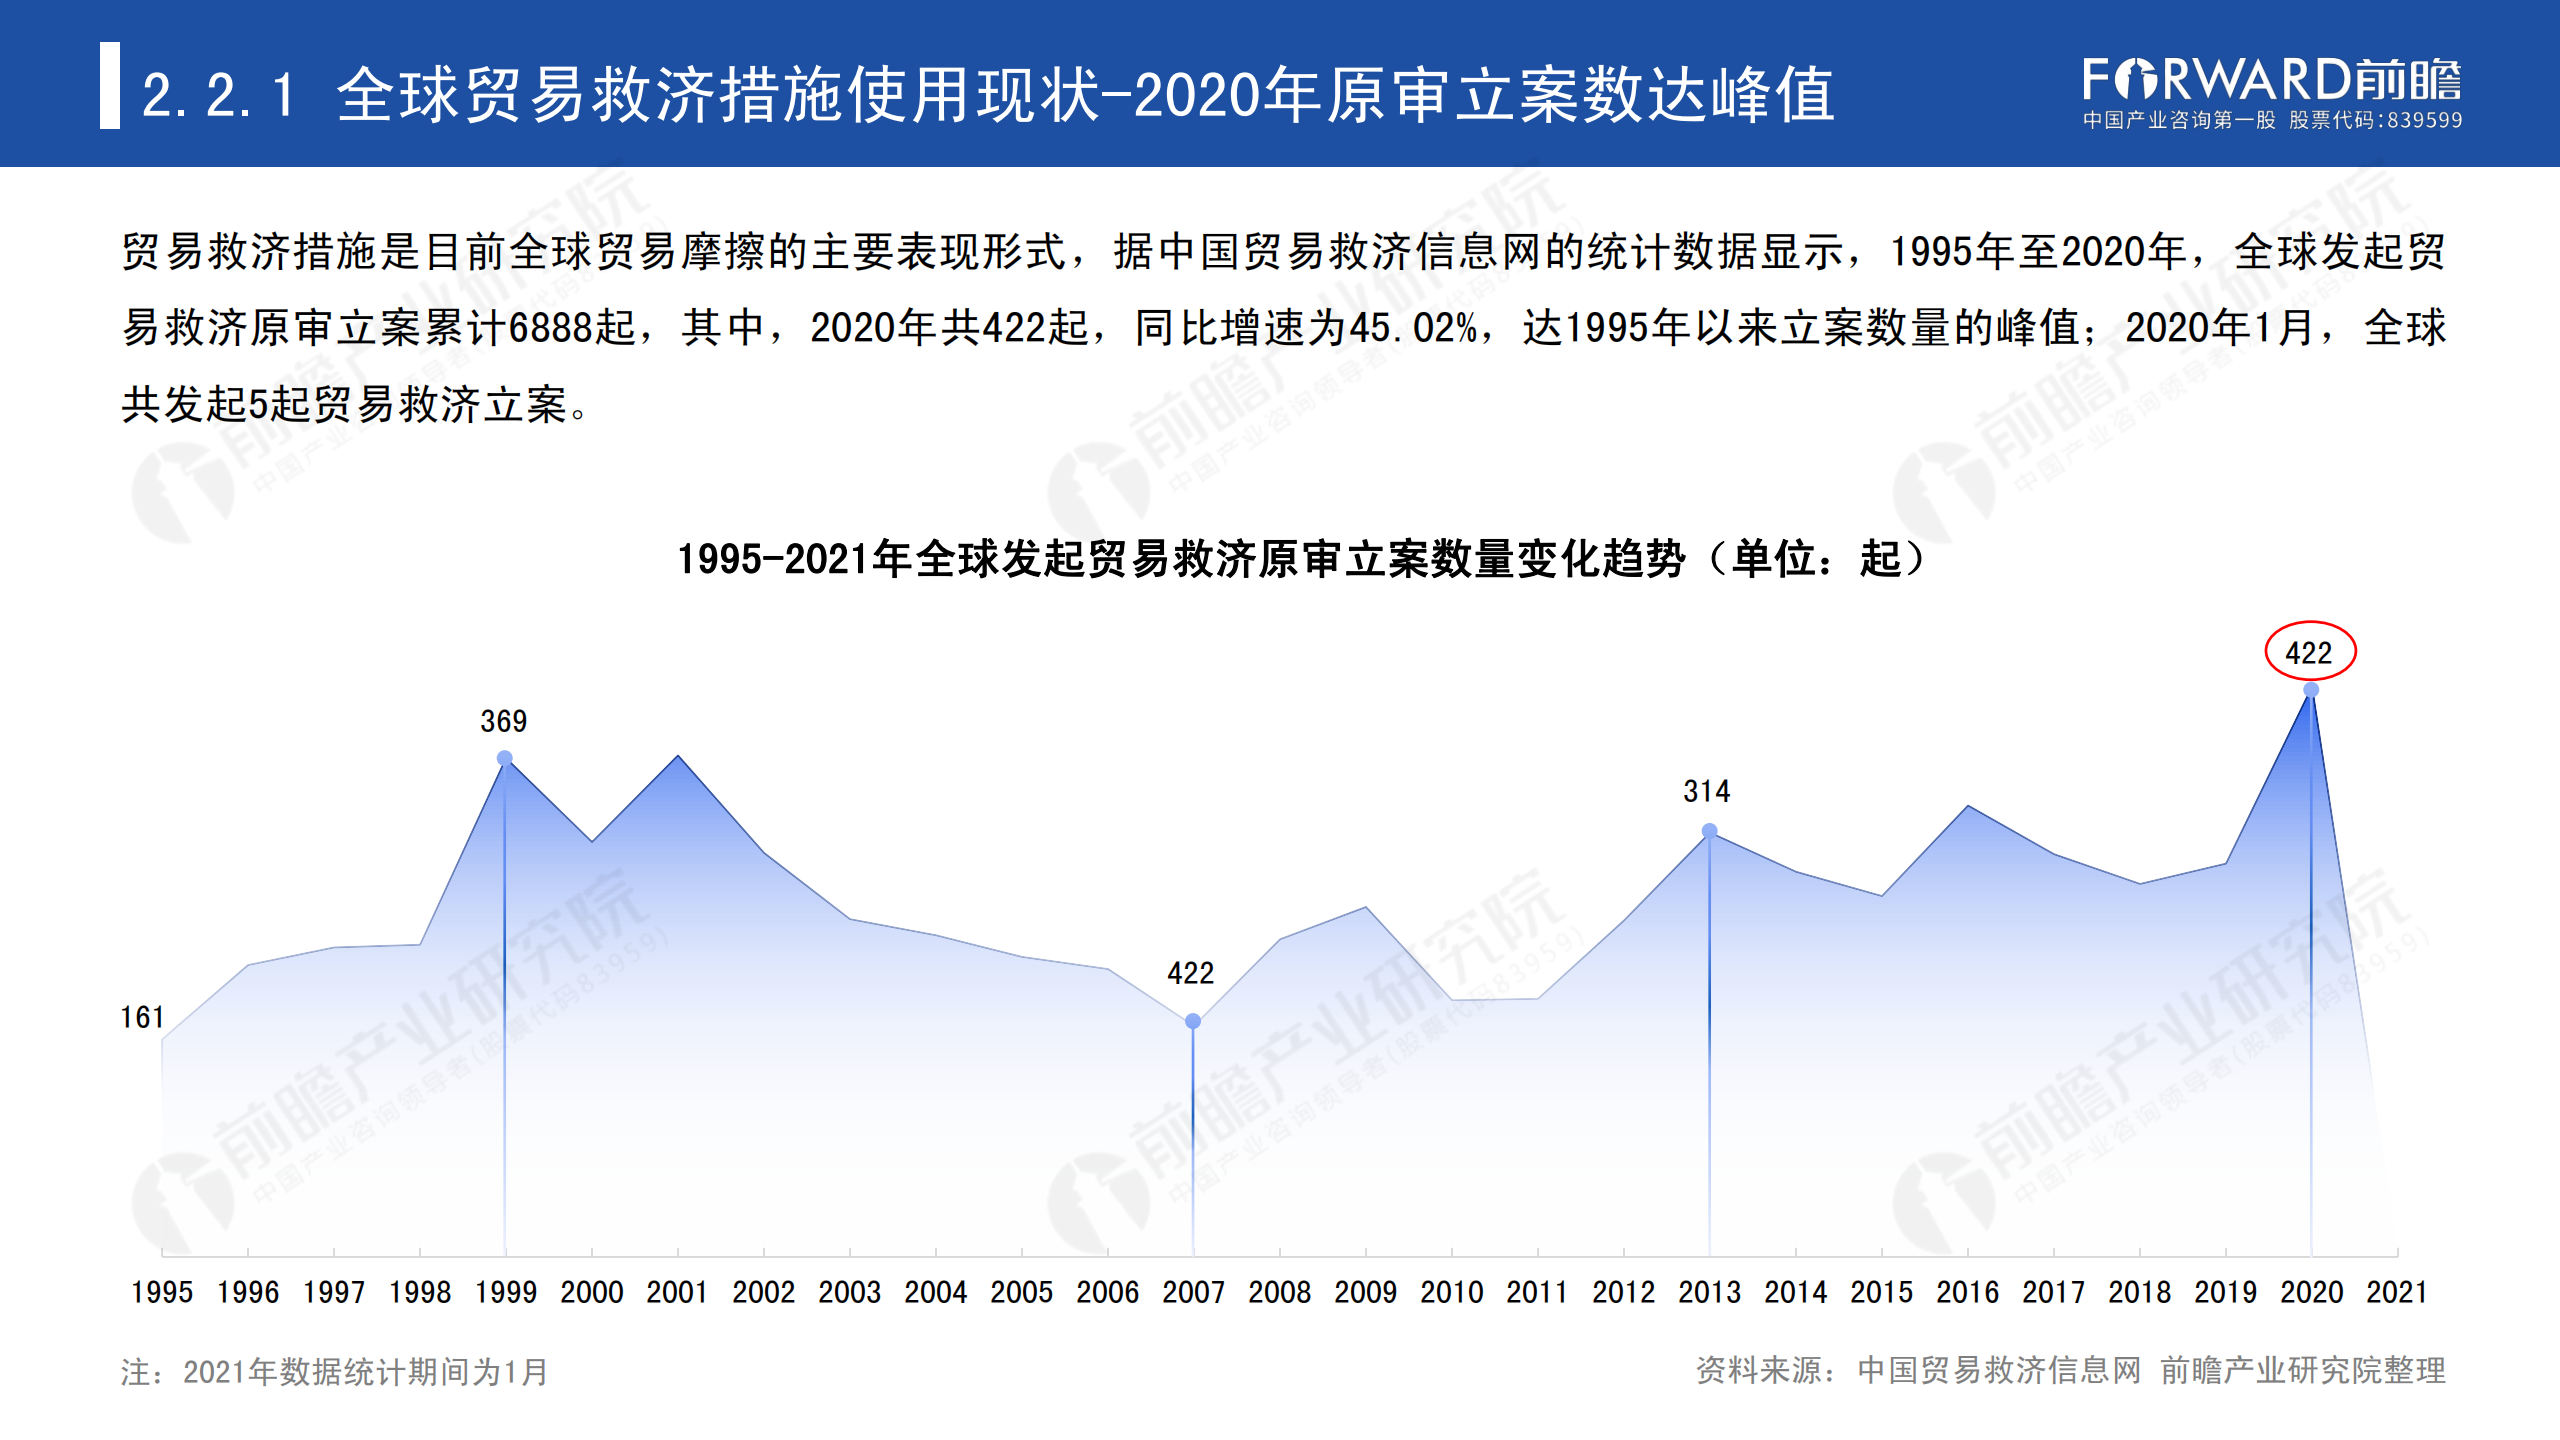 2020年中国贸易摩擦全景回顾-前瞻-2021-64页_13.png